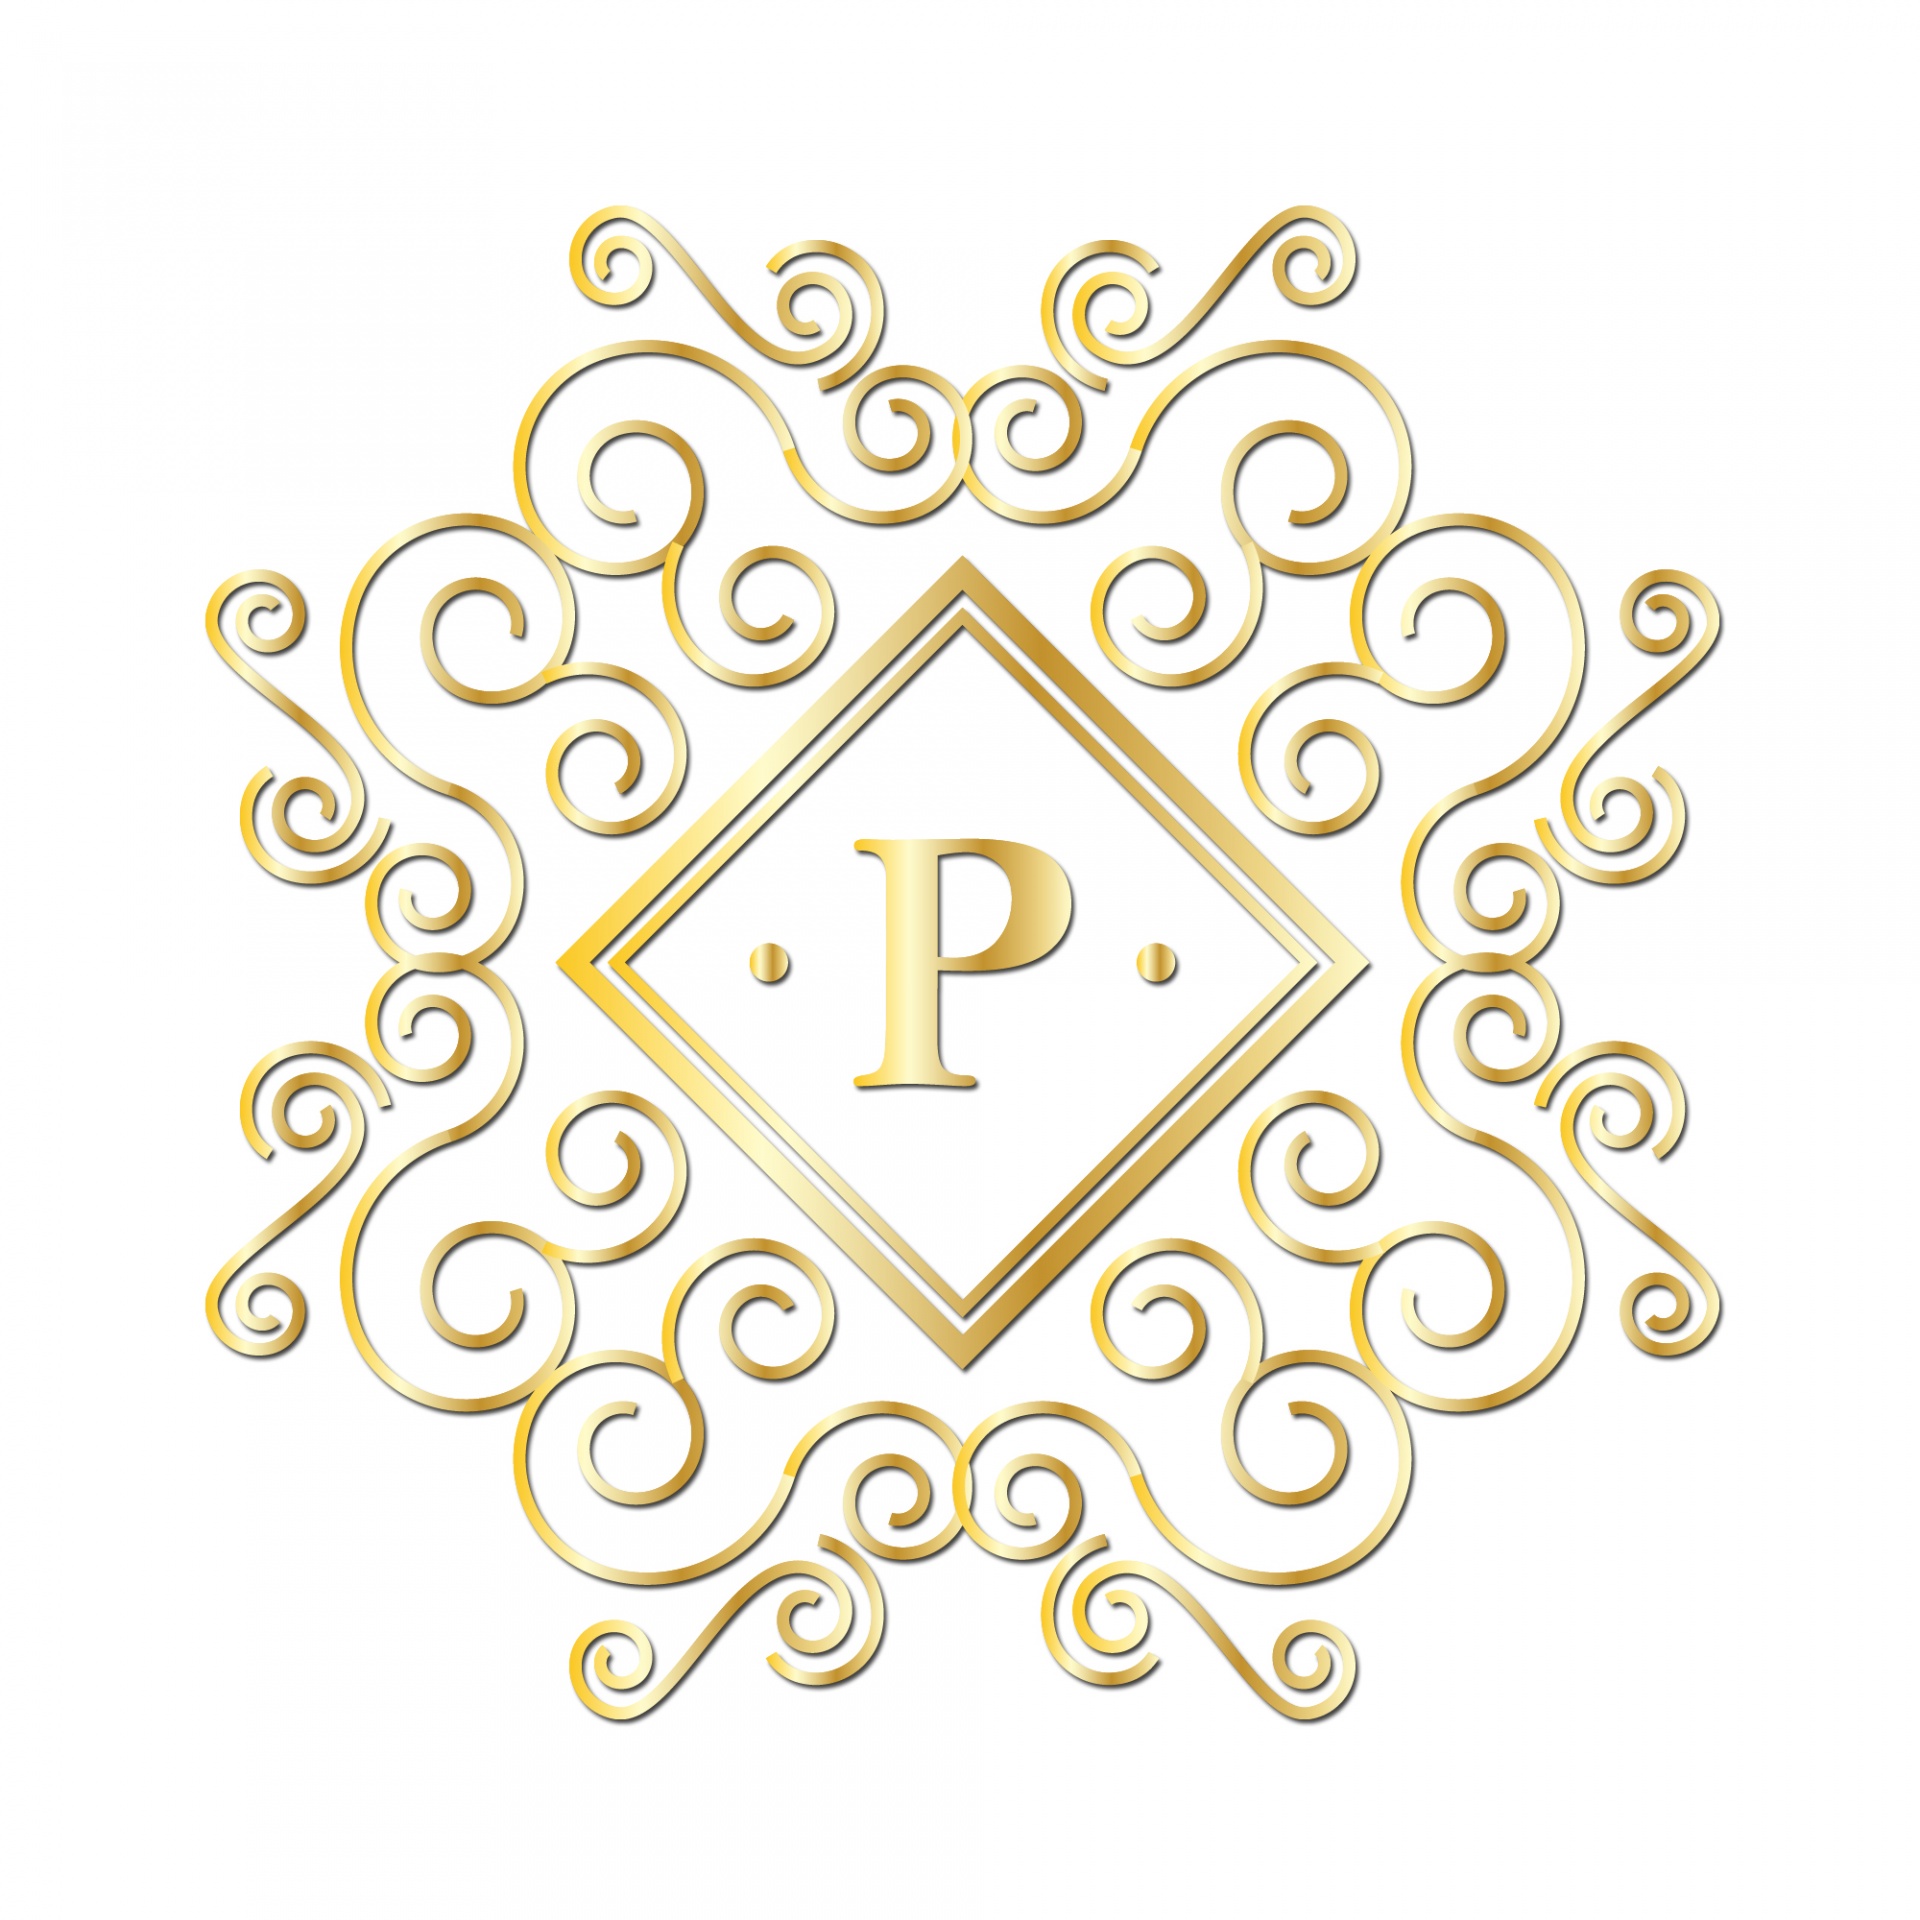 Fancy golden initial P monogram alphabet letter on white background